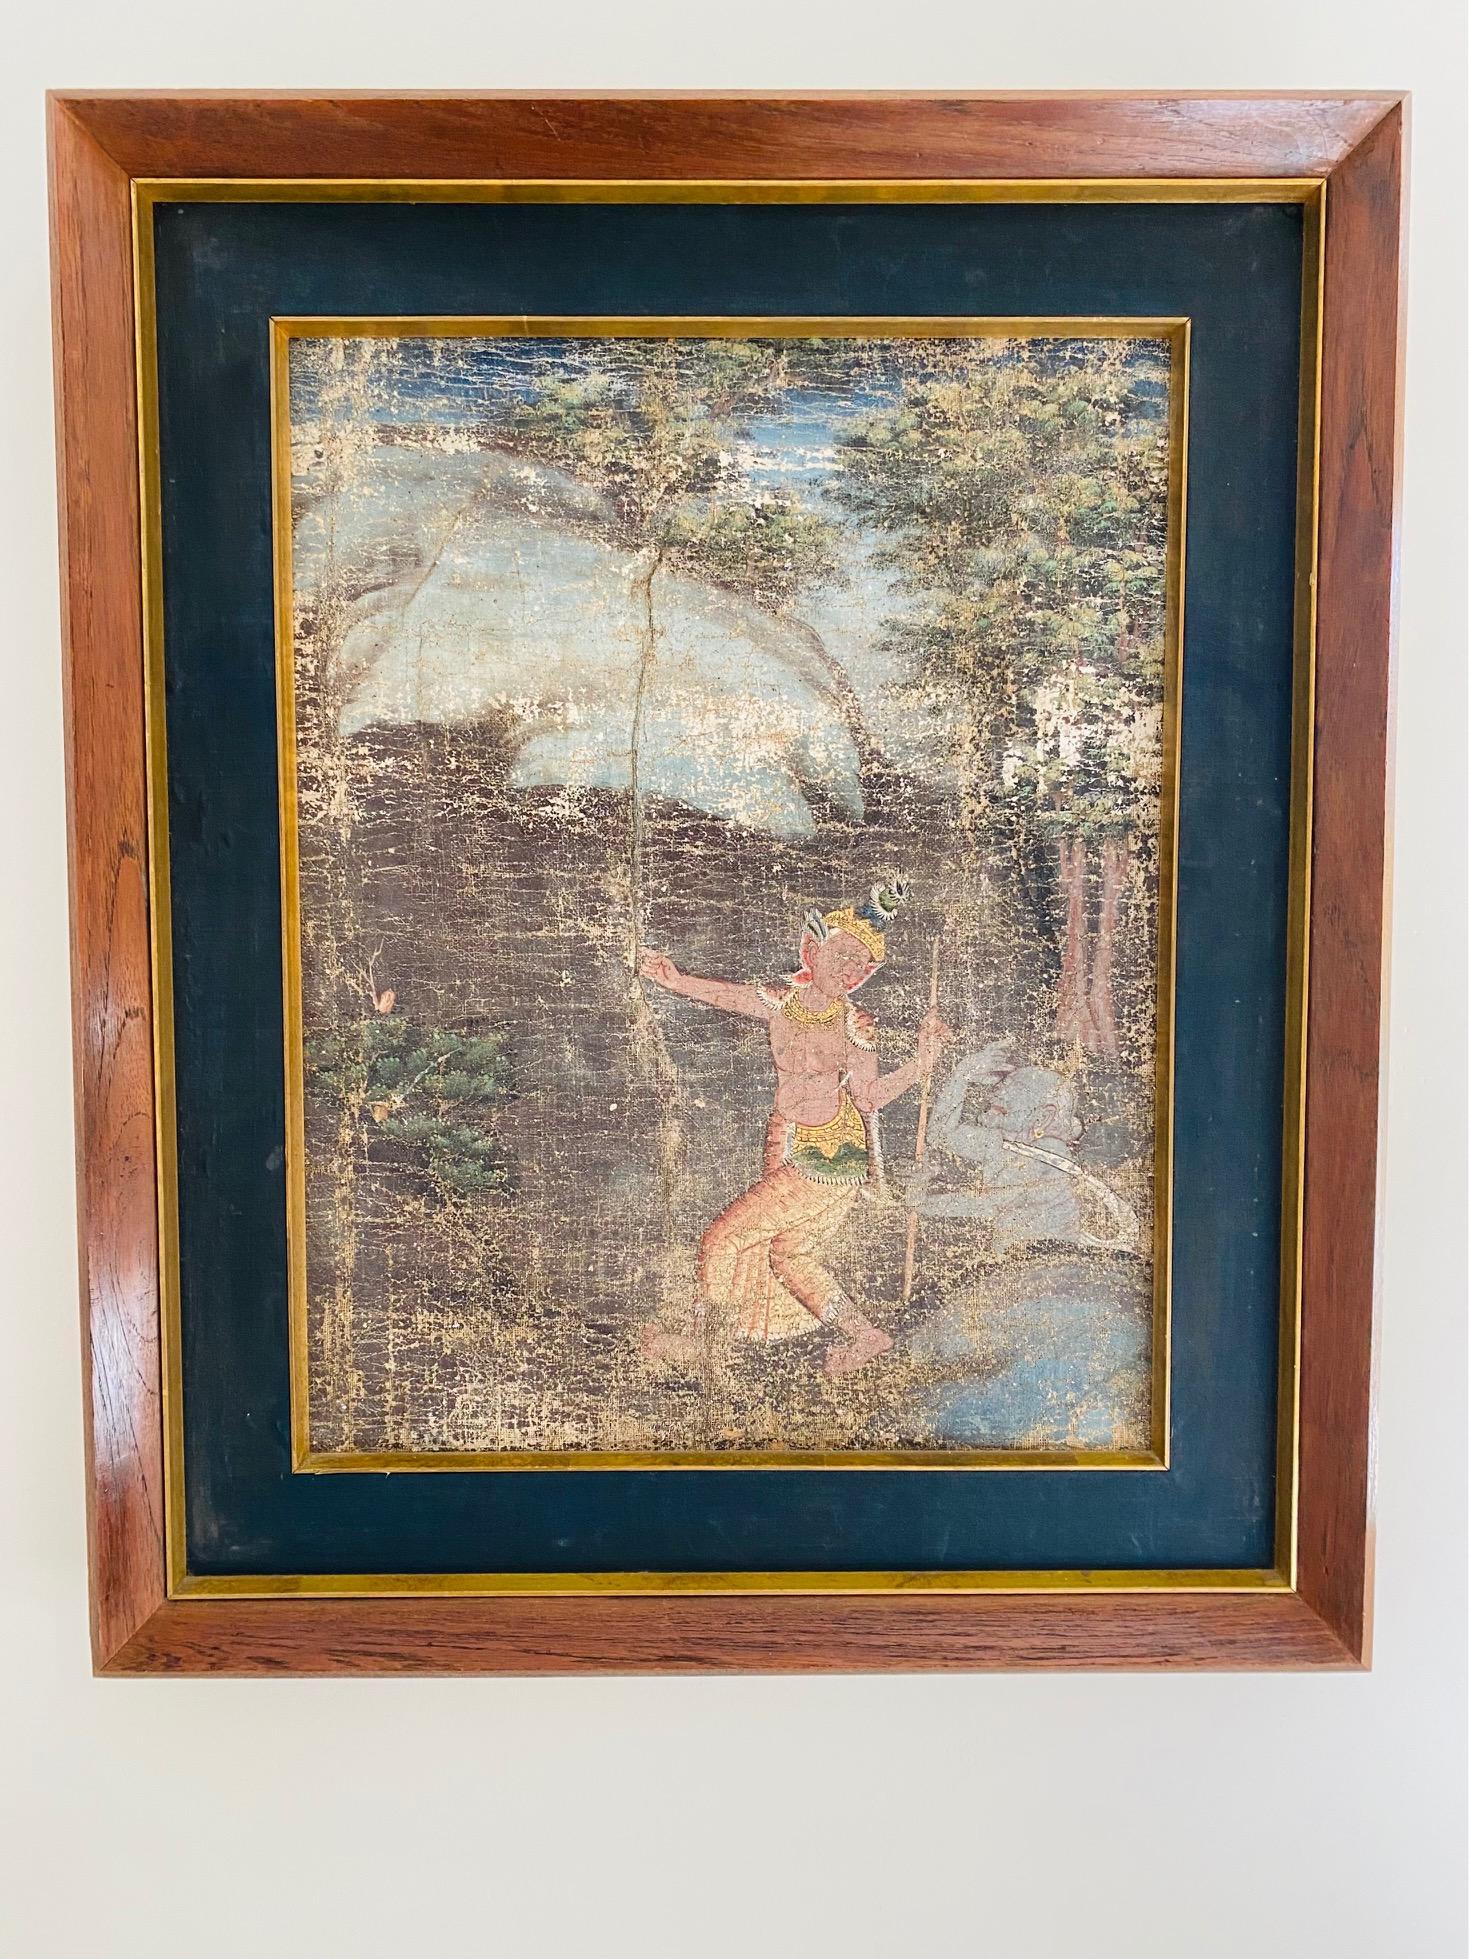 Antikes thailändisches Gemälde, das eine Aspara oder tanzende Nymphe im Wald darstellt, vielleicht mit Hanuman, dem Affengott, der sowohl in der hinduistischen als auch in der buddhistischen Religion für seine Stärke und seine außergewöhnlichen